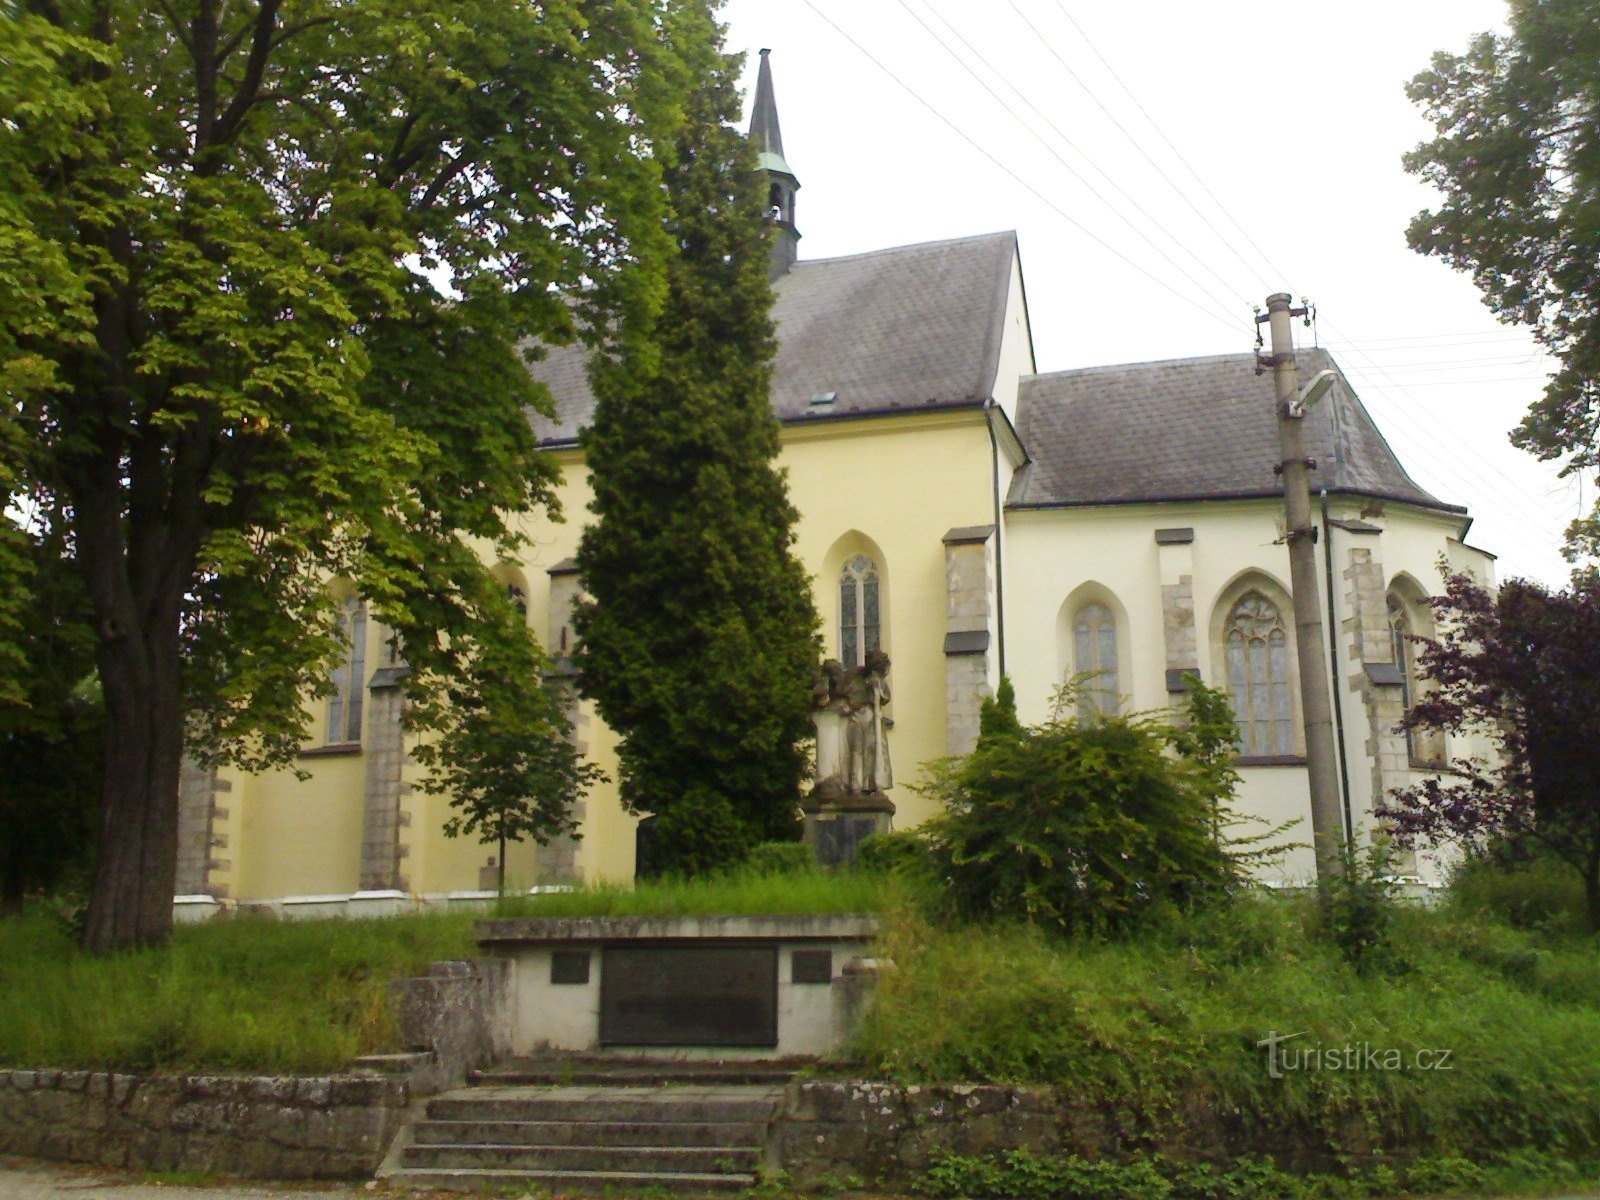 Rovensko pod Troskami - Szent István-templom. Vencel